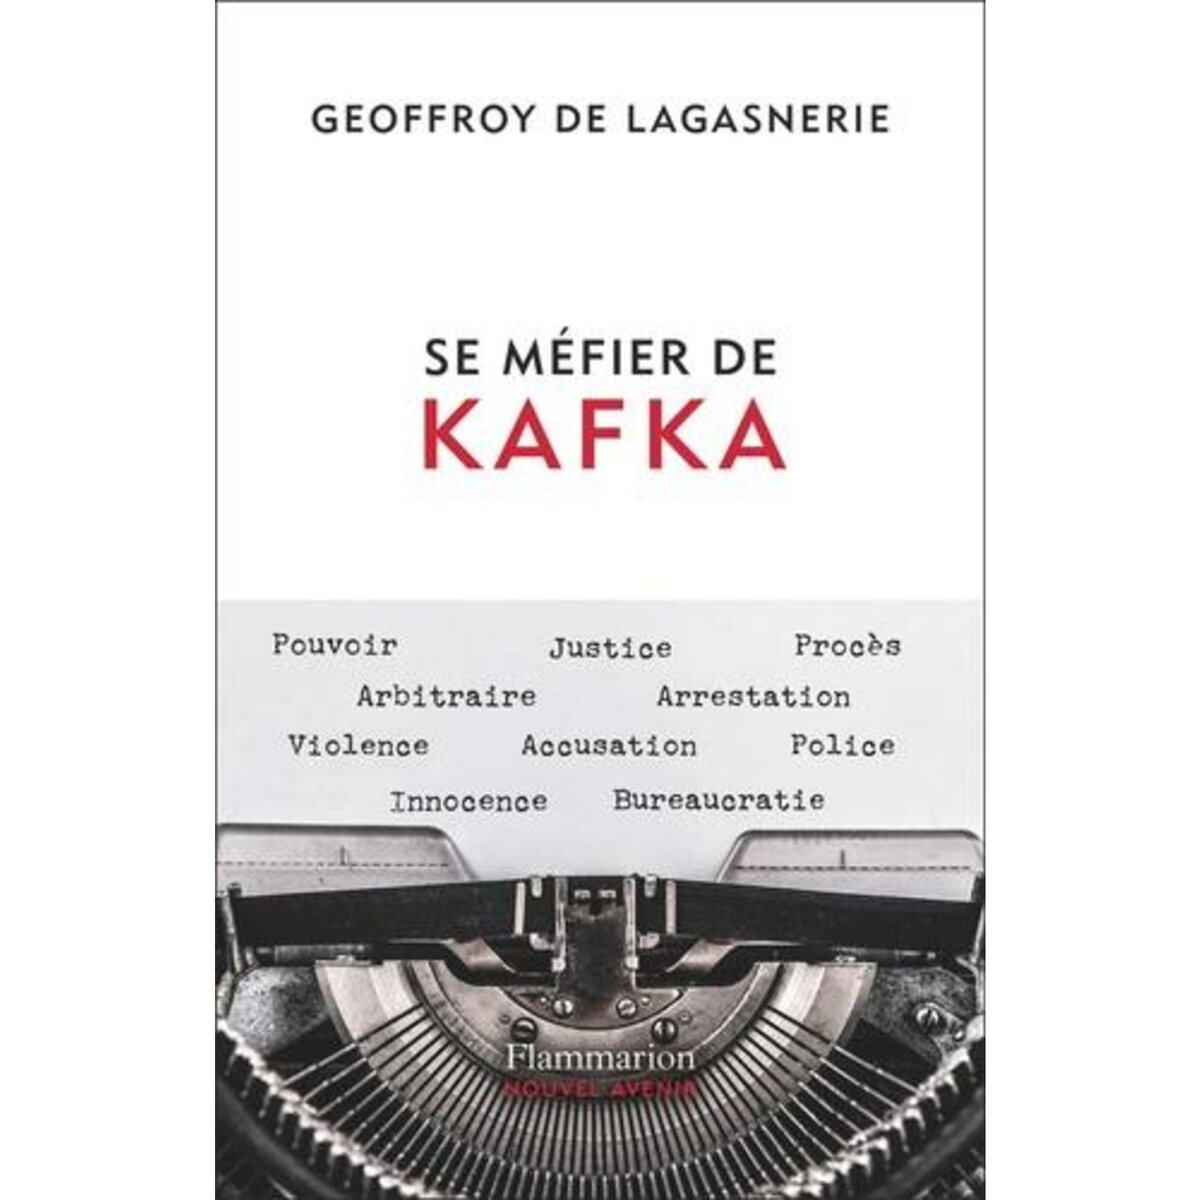  SE MEFIER DE KAFKA, Lagasnerie Geoffroy de